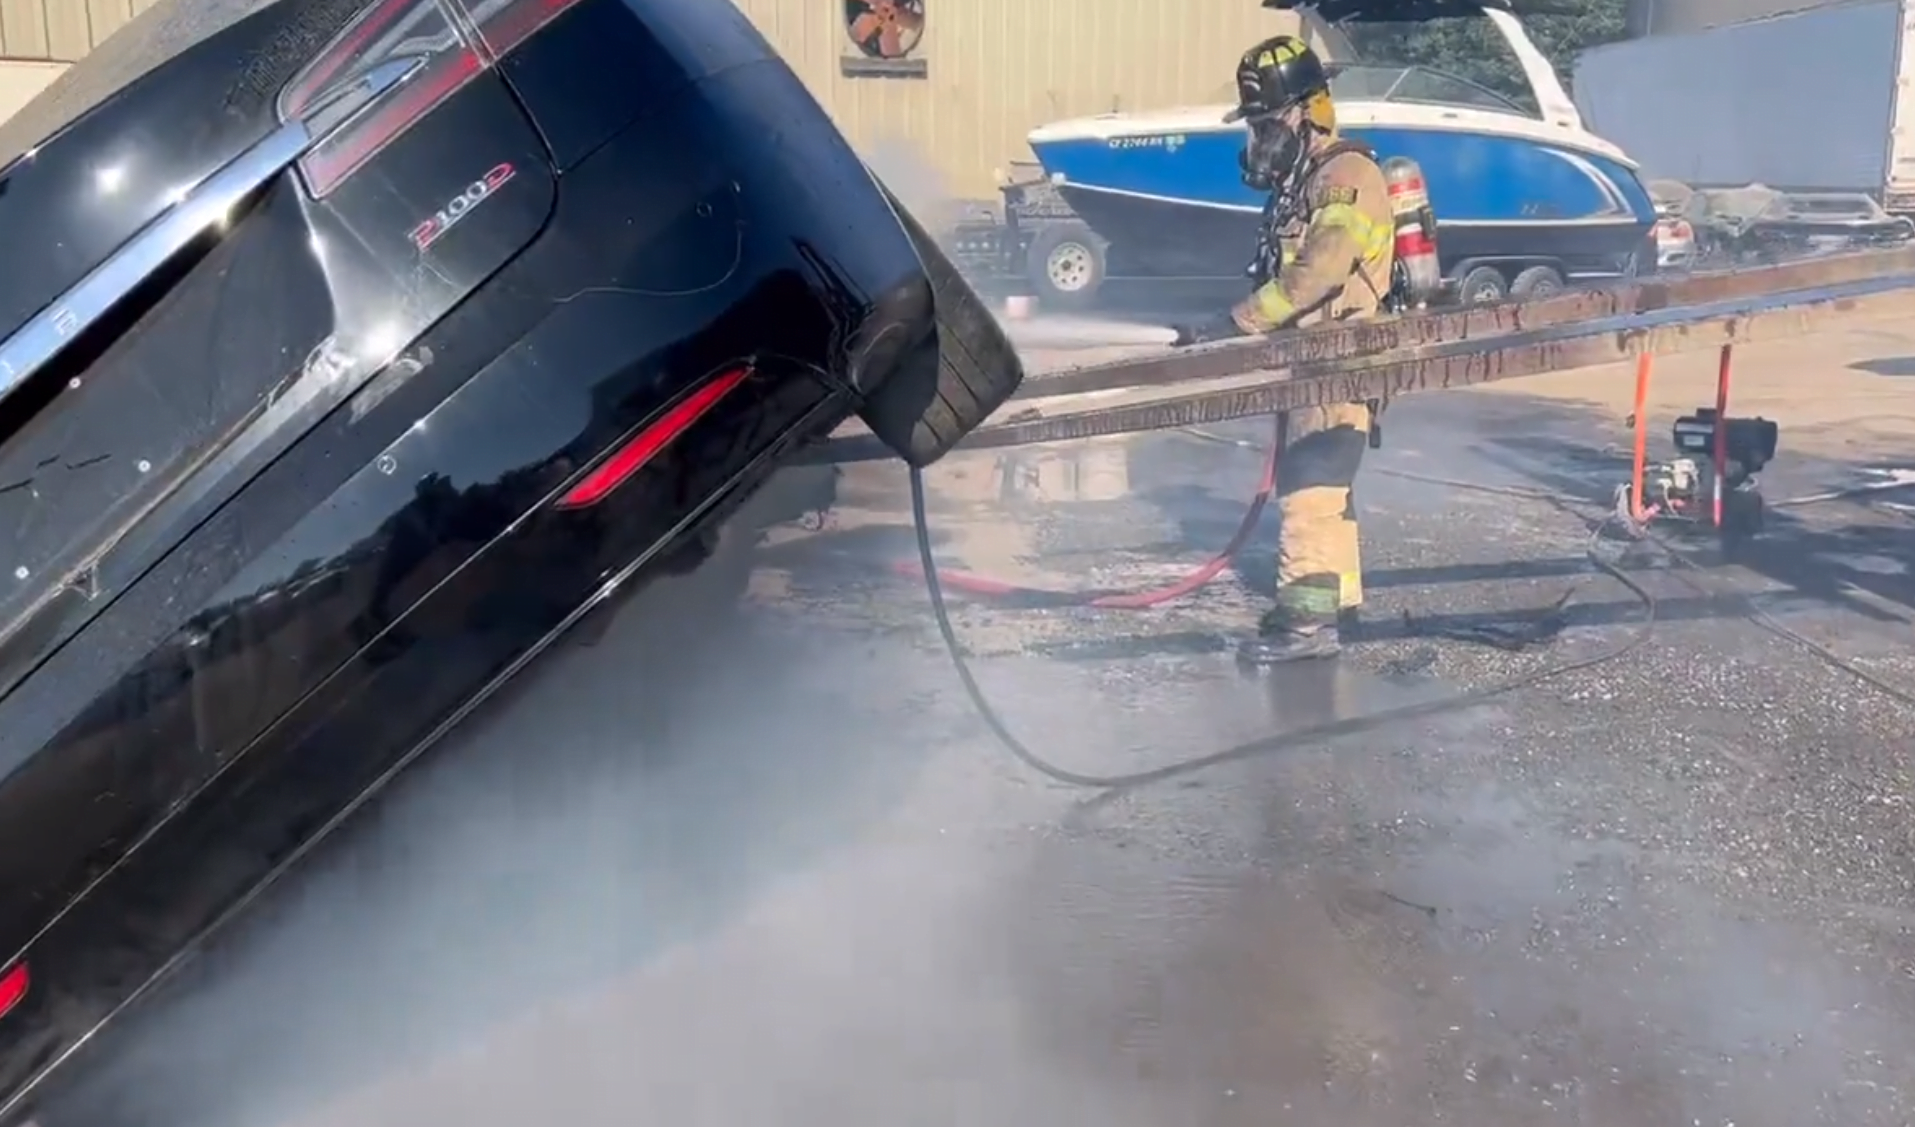 Strażak w pełnym ubioru gaśniczym trzyma wąż i gasi pożar uniesionego tylnego końca elektrycznego samochodu, z którego wydobywa się dym.